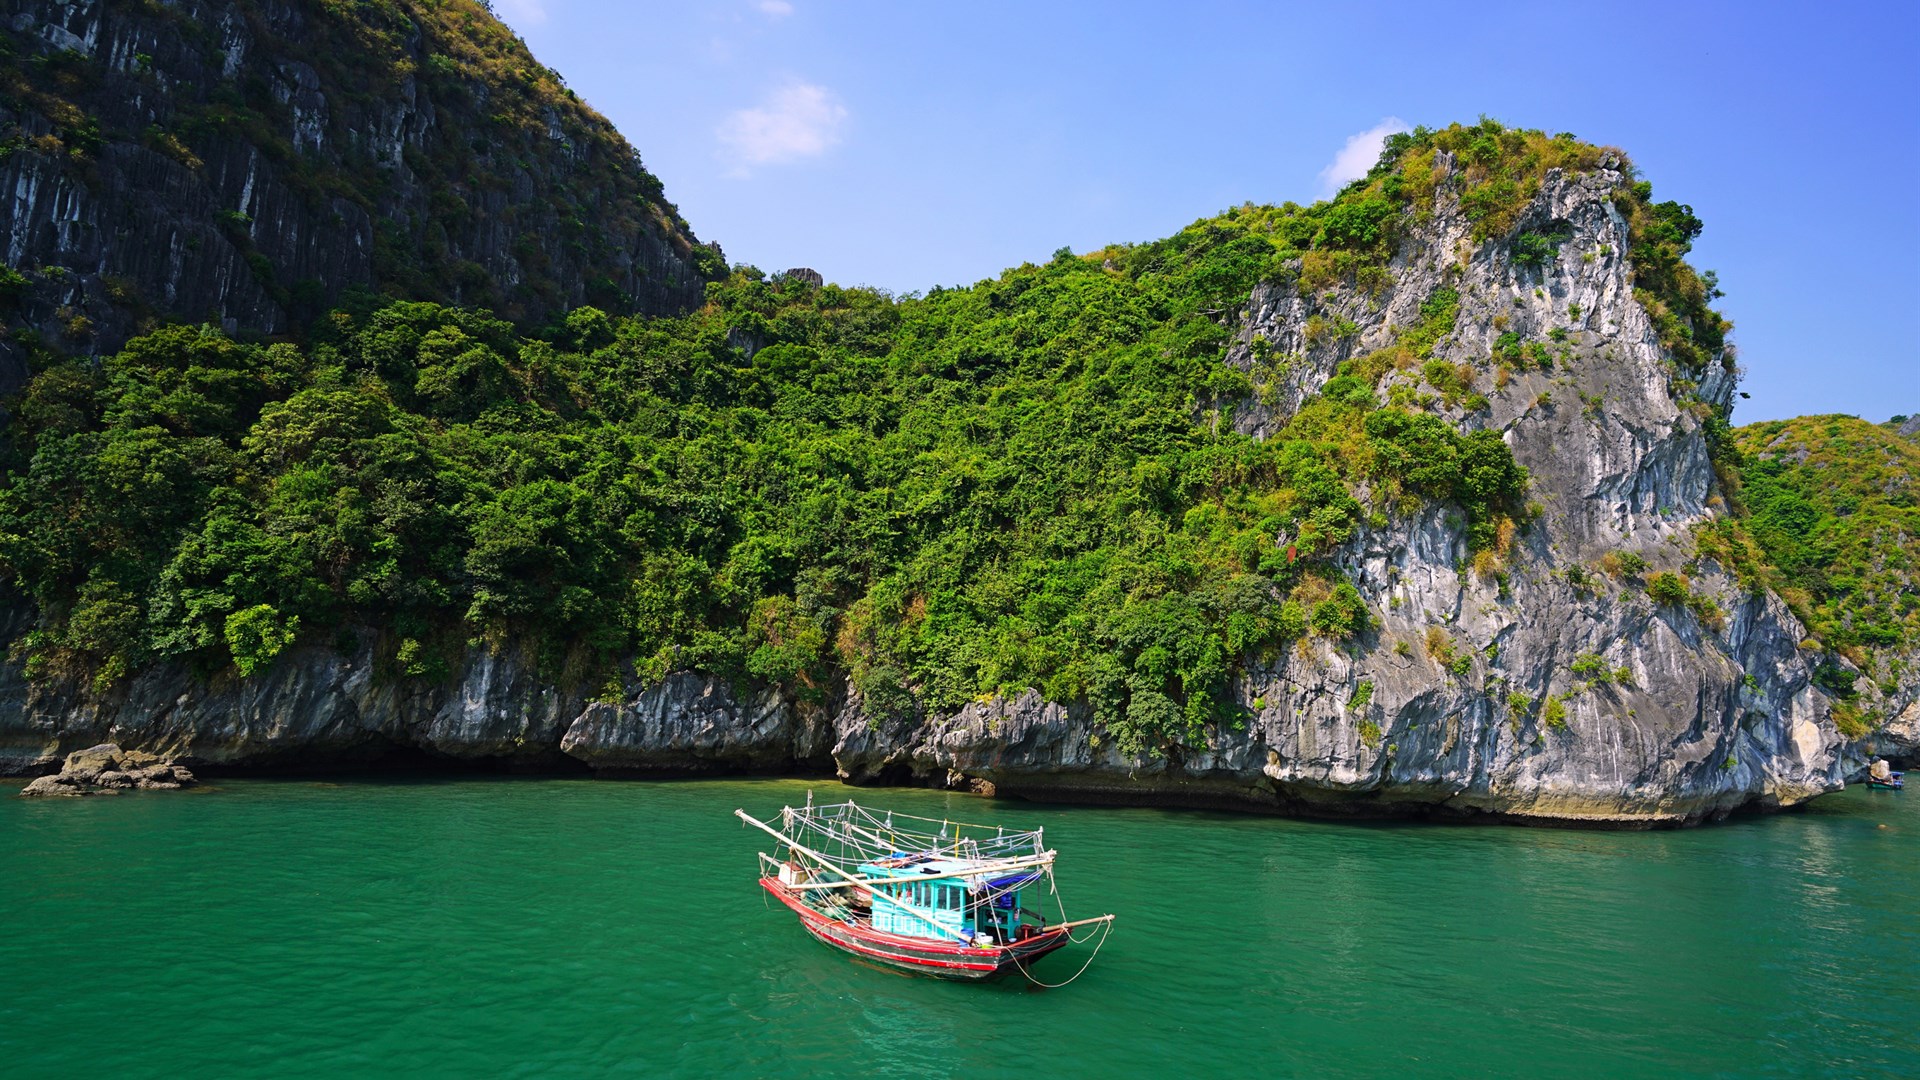 عکس جالب از قایق قشنگ در وسط آب با درختان سبز و زیبا 